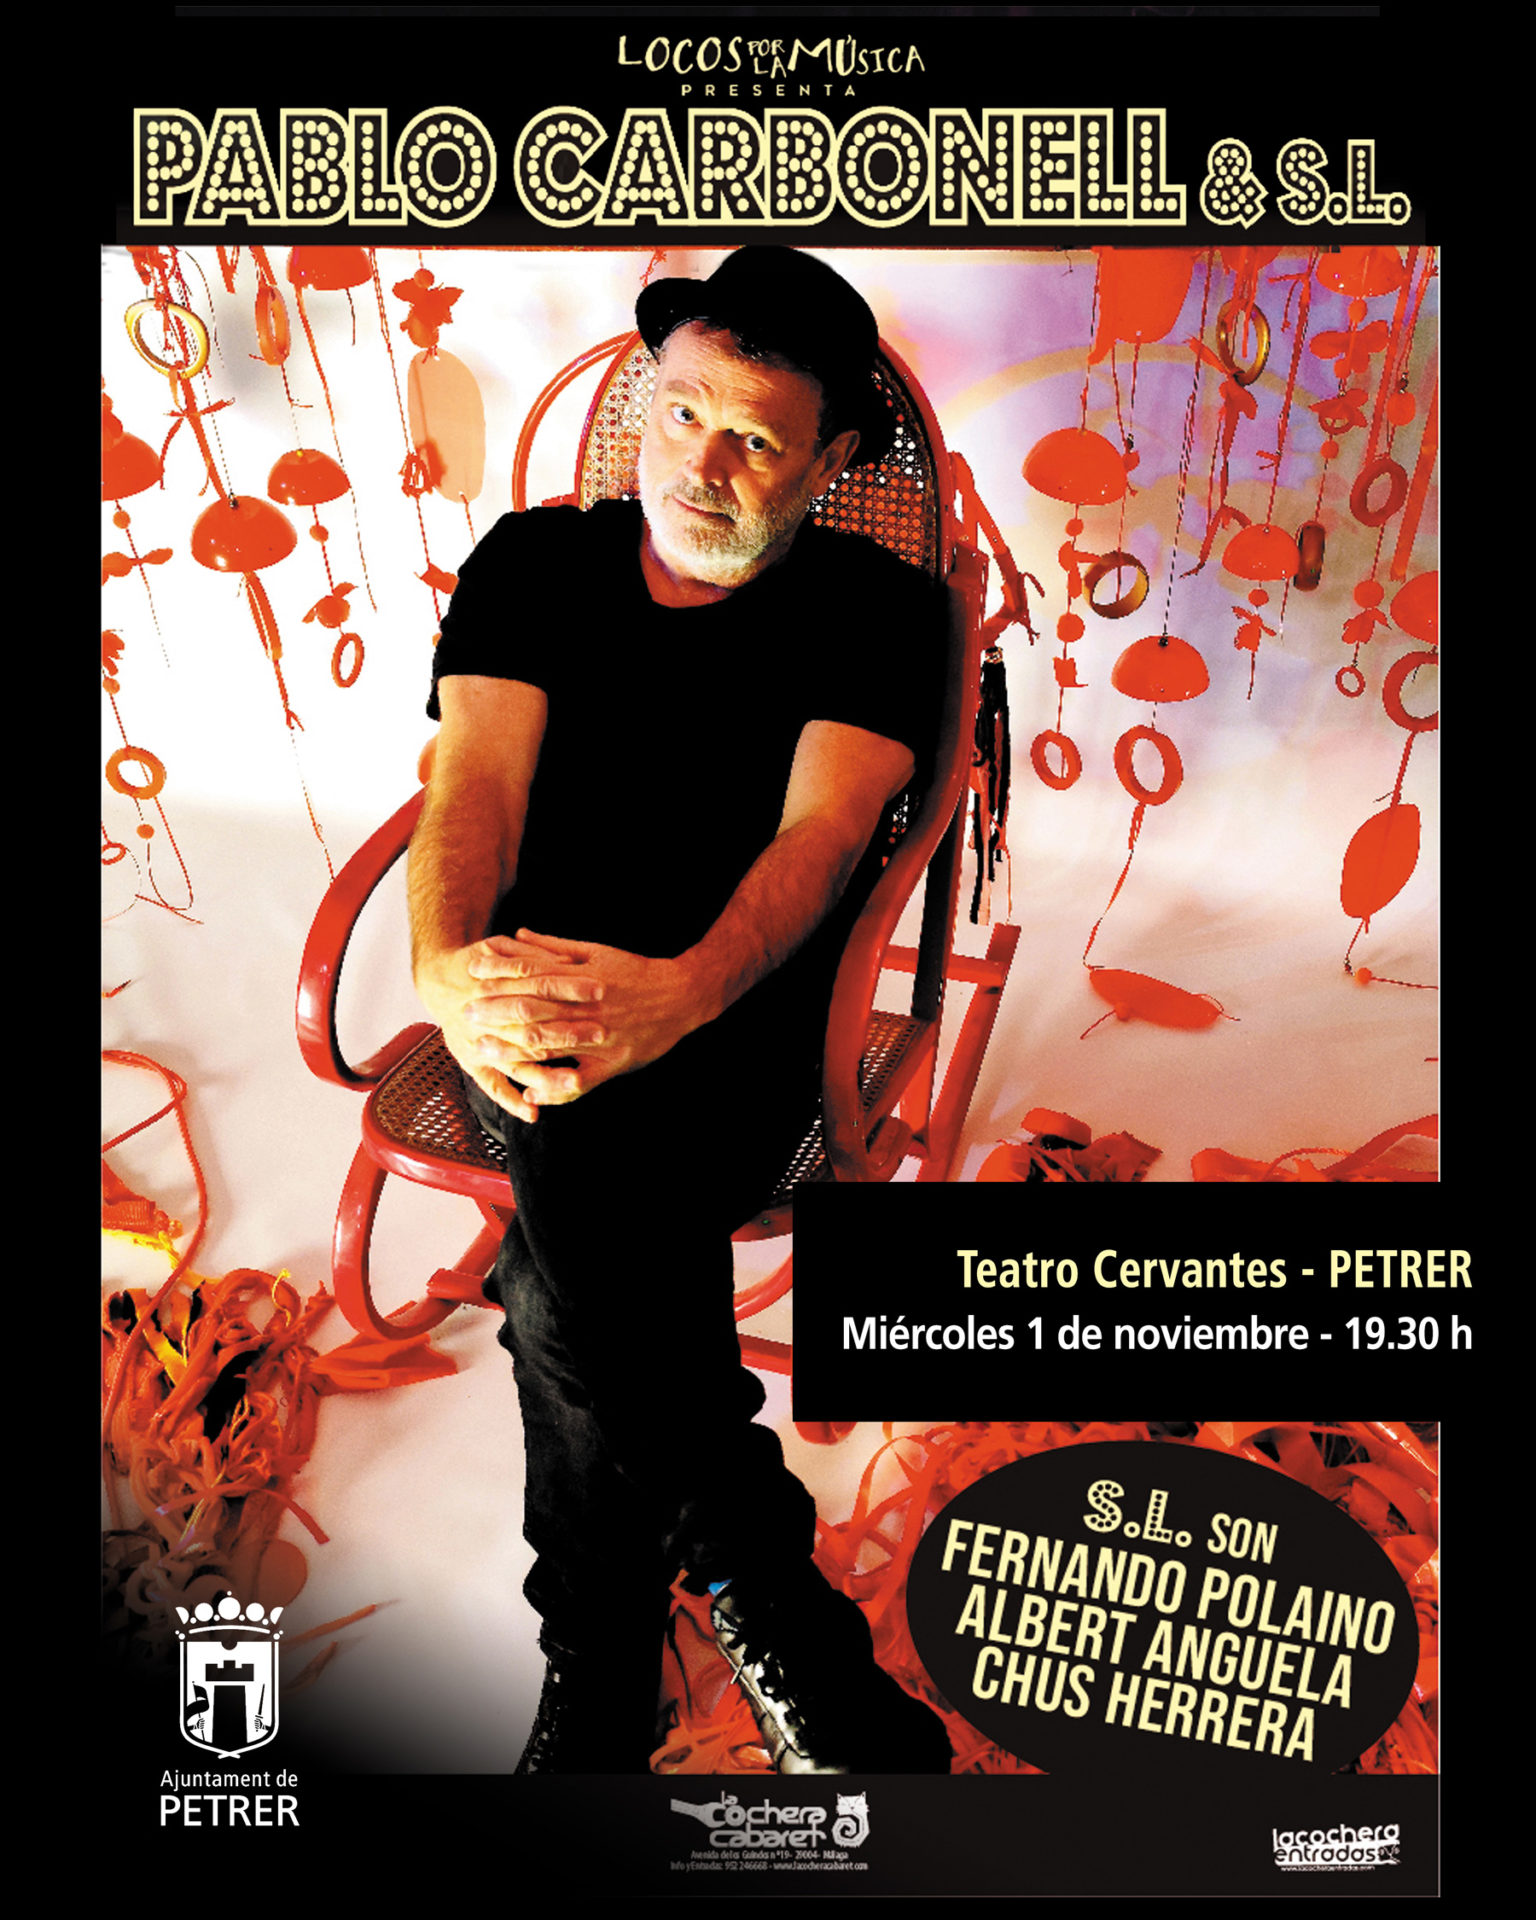 El artista Pablo Carbonell adelanta su actuación en el Teatro Cervantes de Petrer al 1 de noviembre